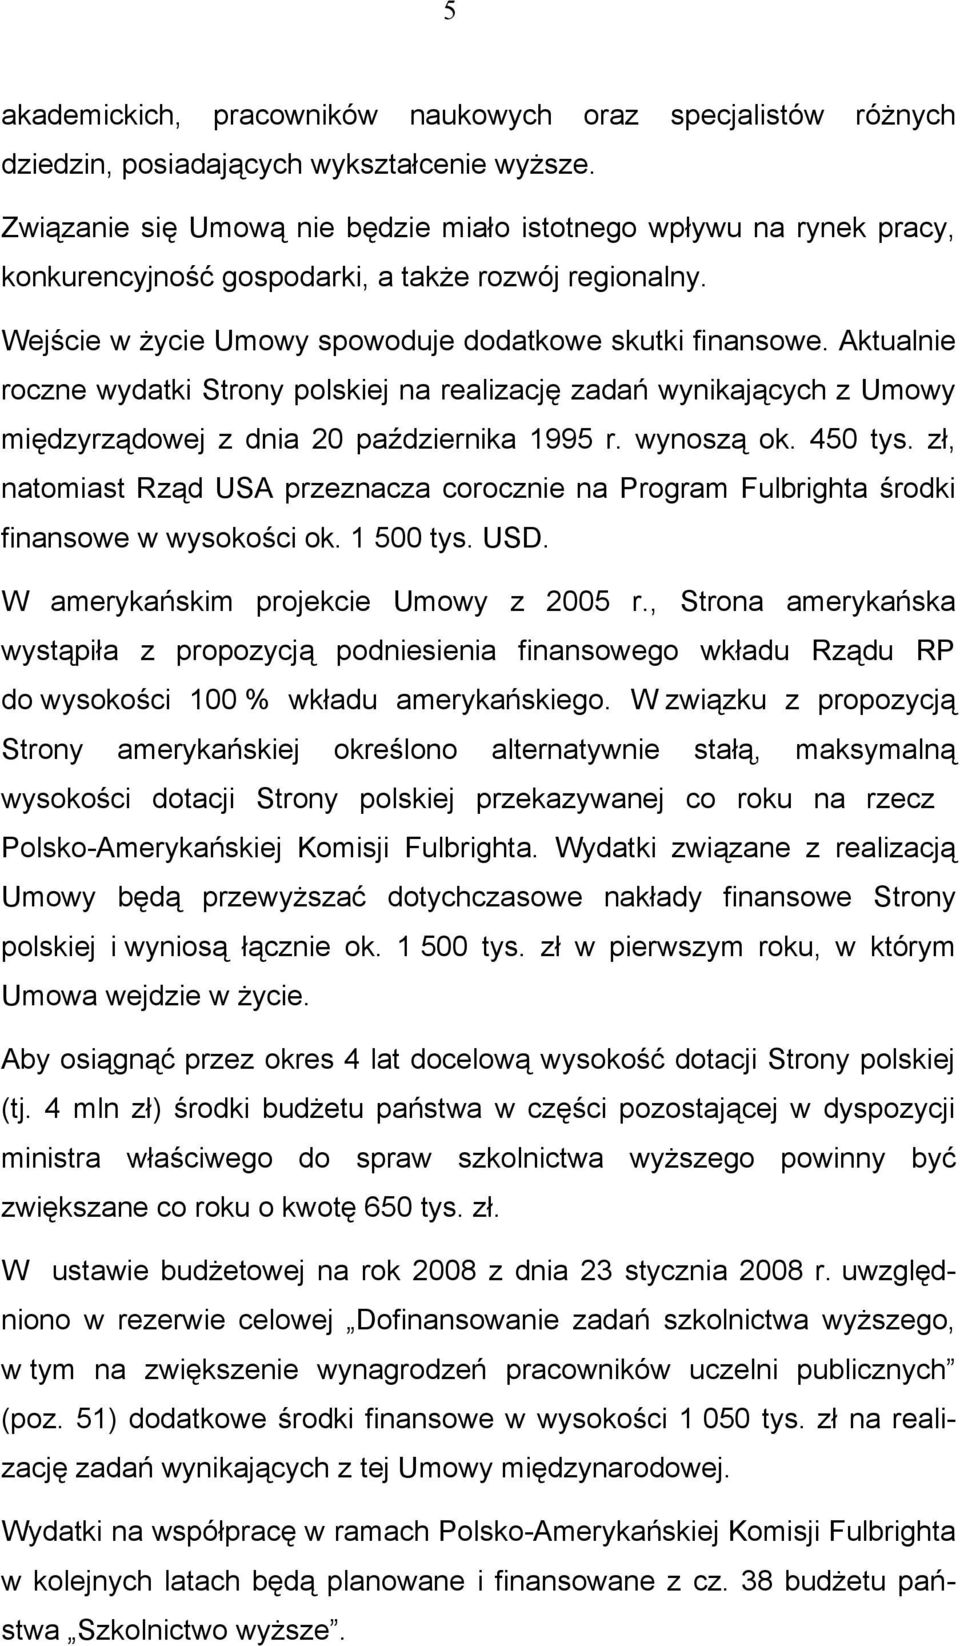 Aktualnie roczne wydatki Strony polskiej na realizację zadań wynikających z Umowy międzyrządowej z dnia 20 października 1995 r. wynoszą ok. 450 tys.